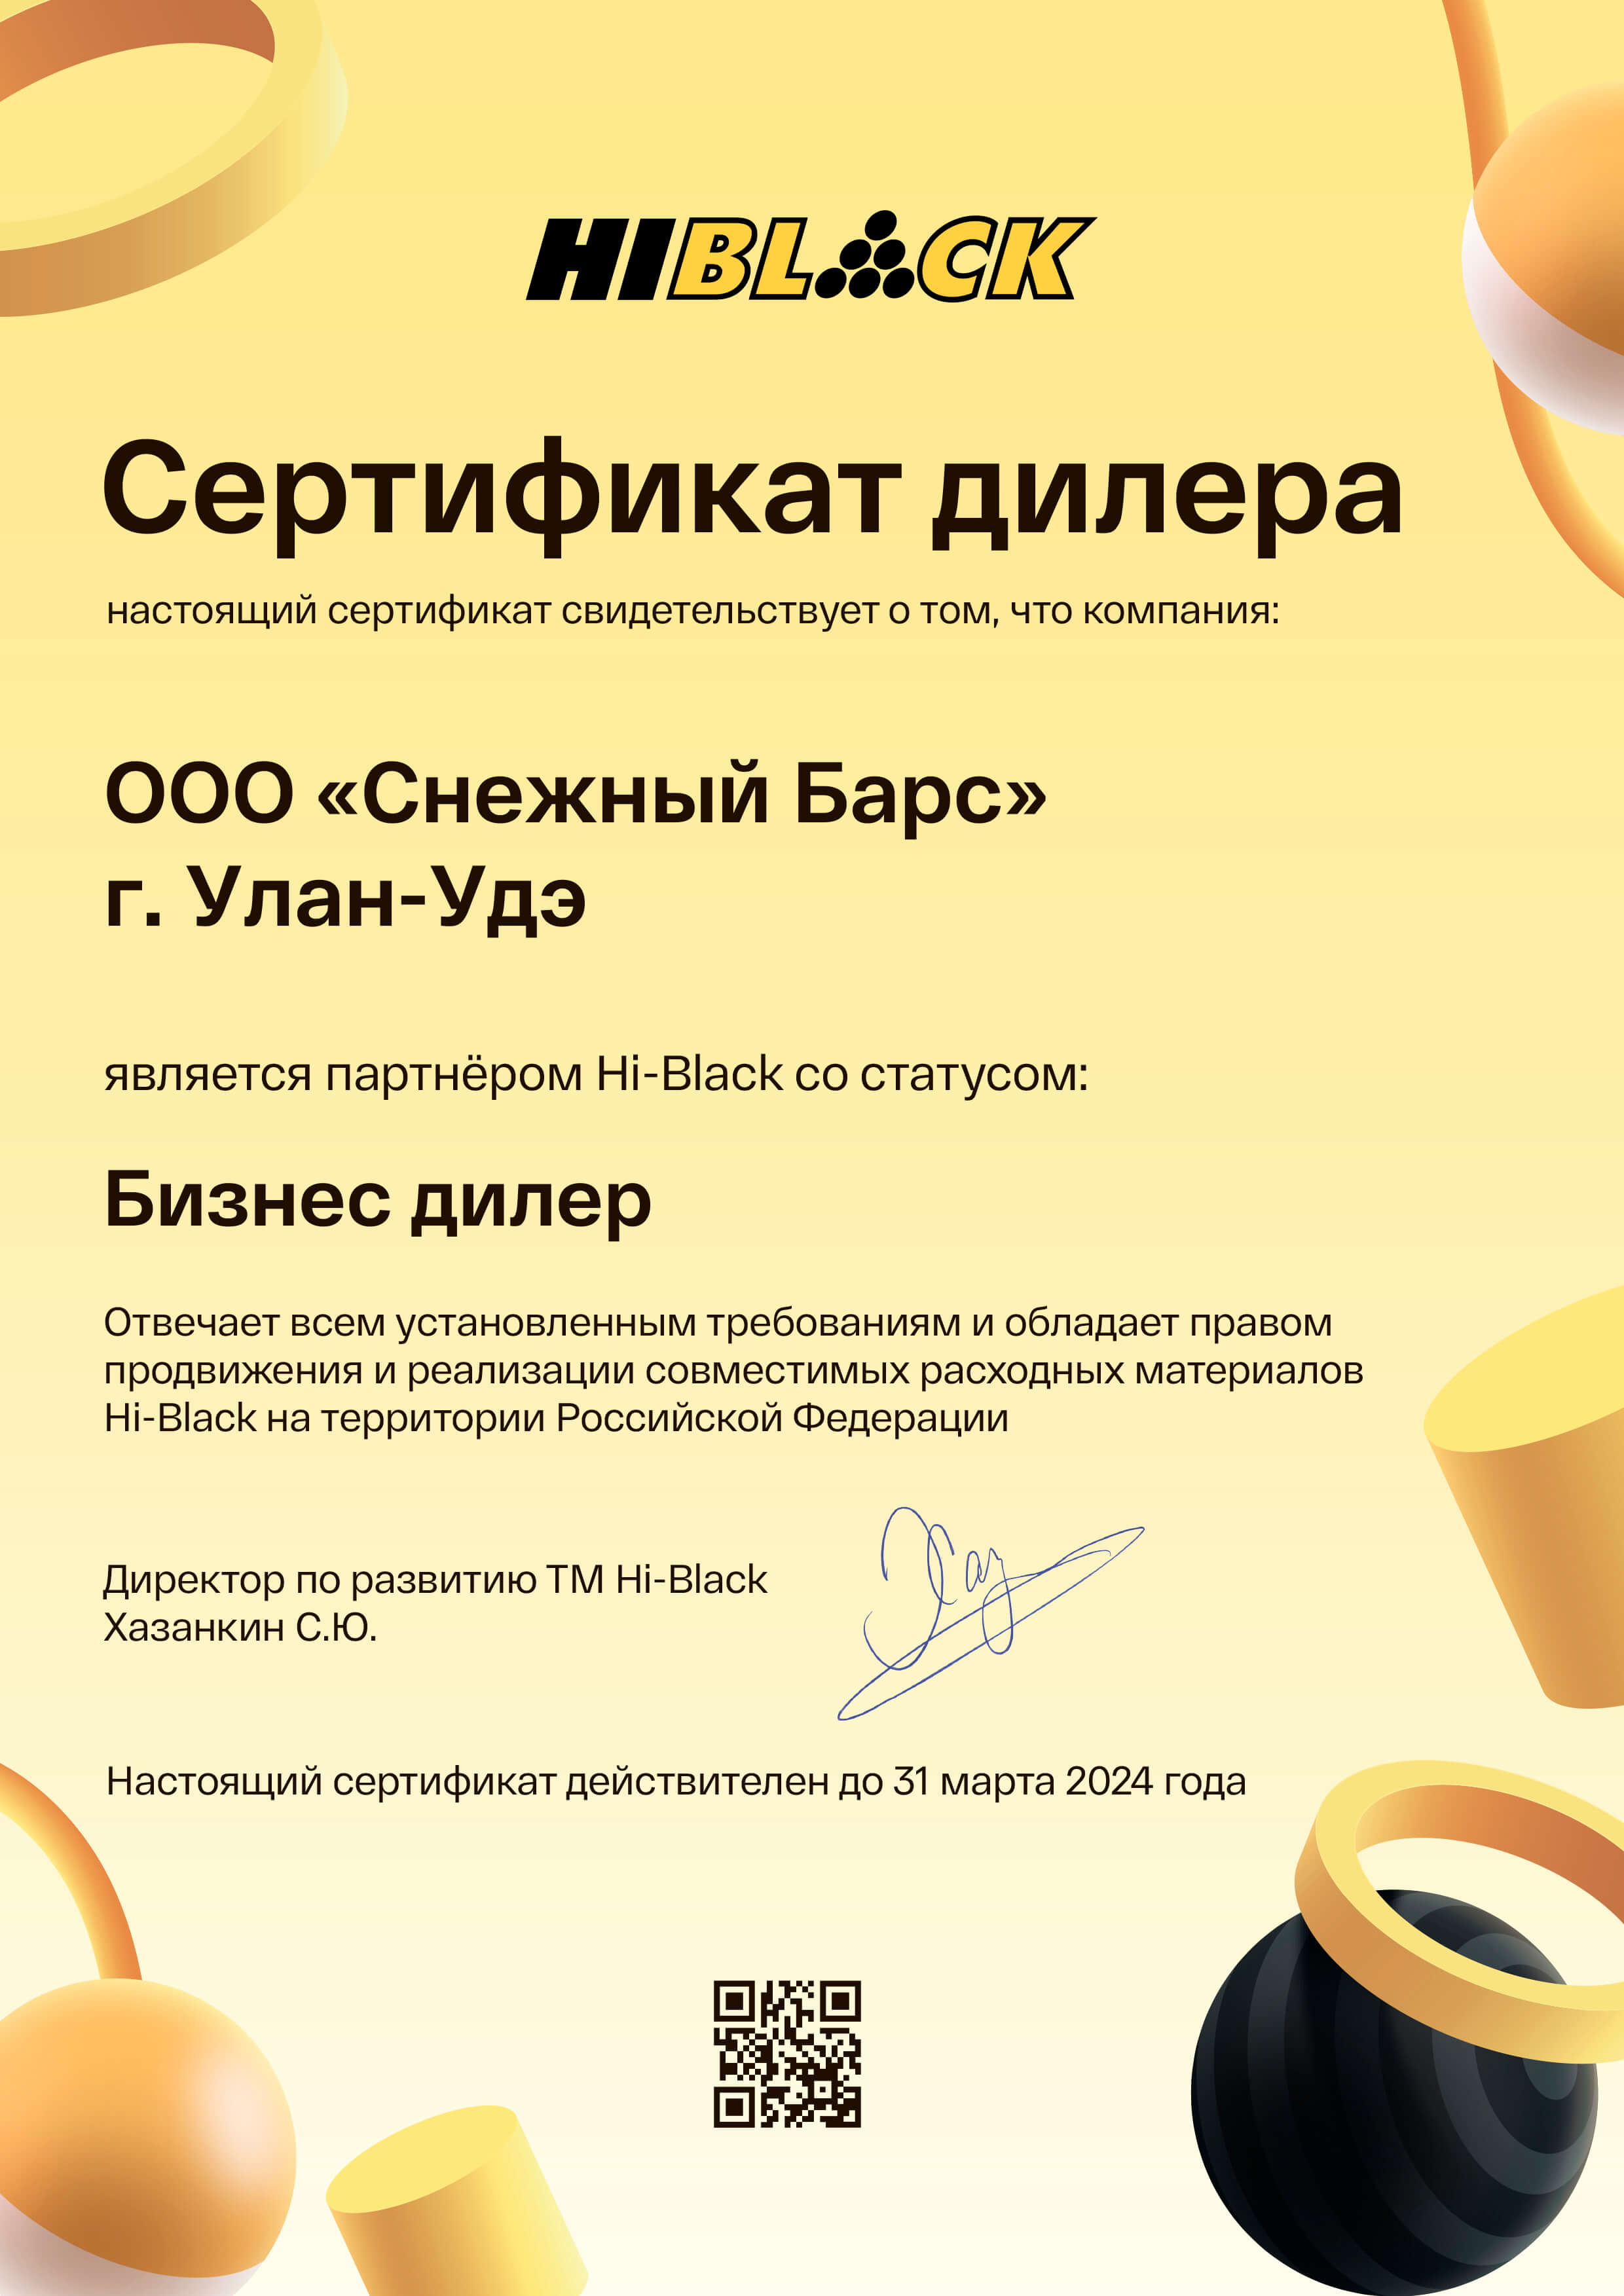 Сертификат дилера компании Hi-black